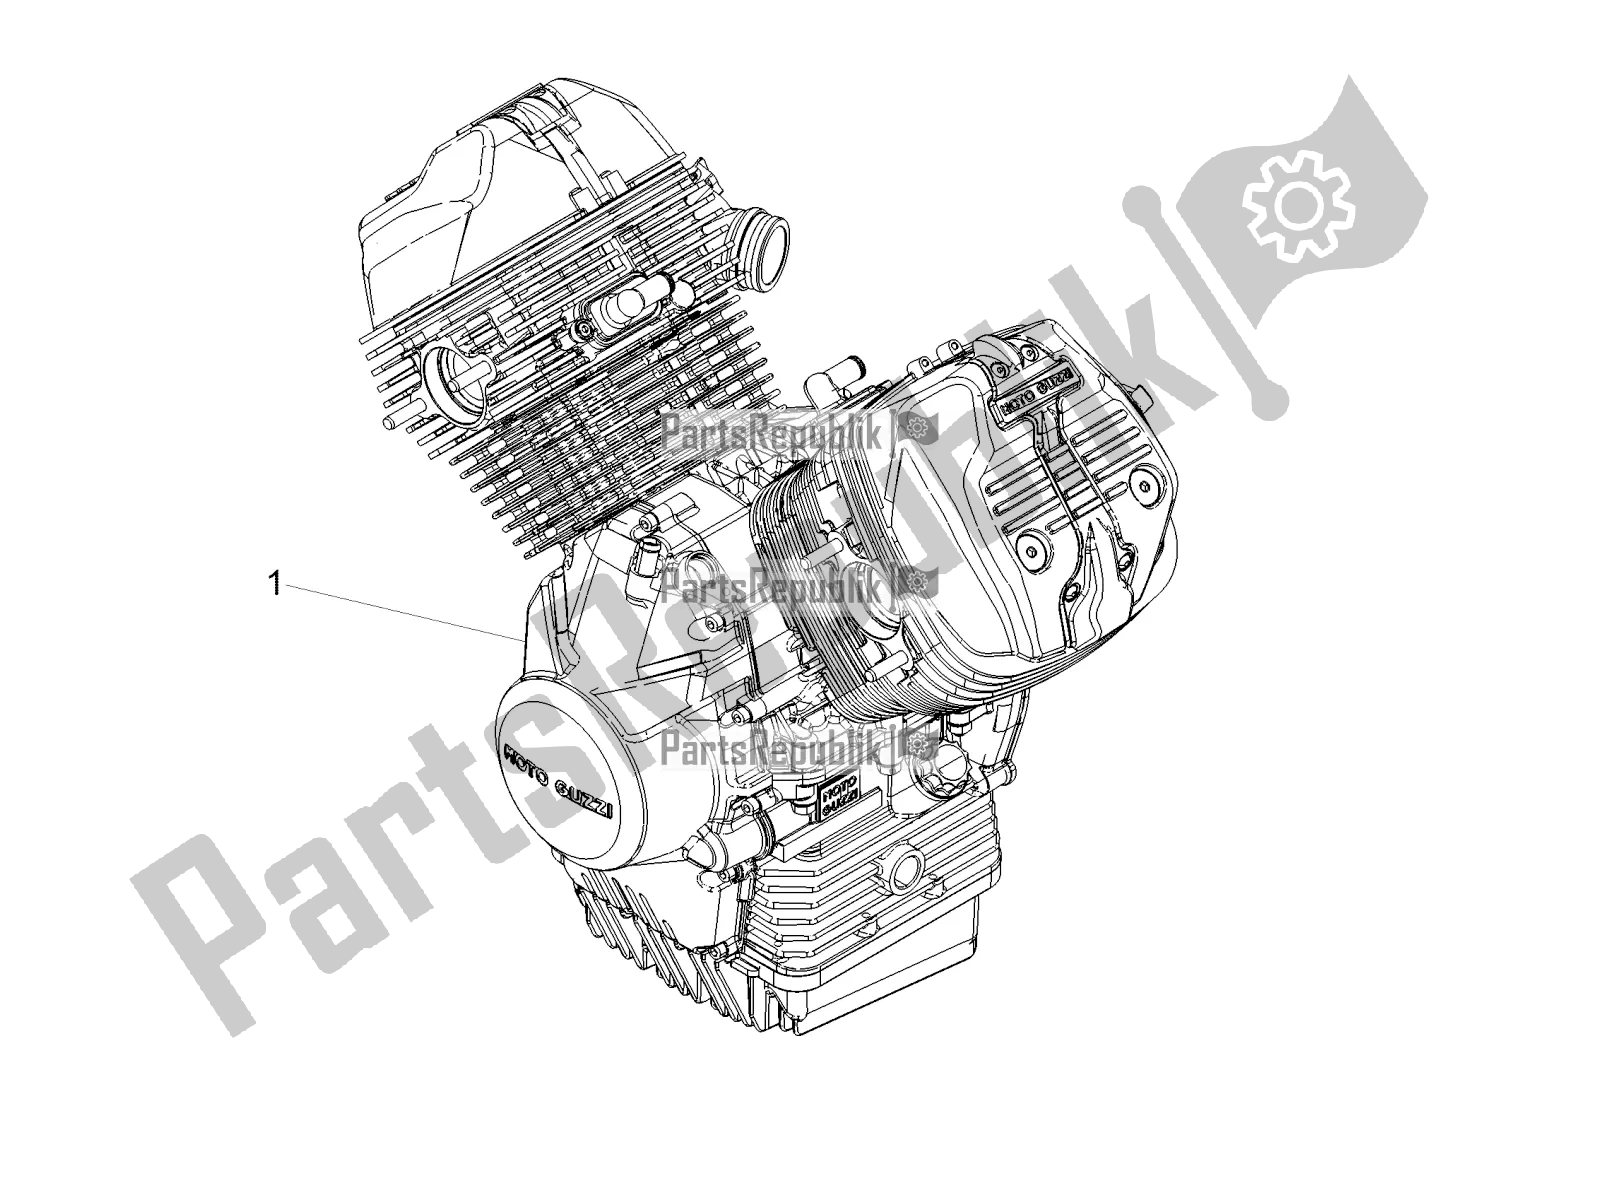 Todas las partes para Palanca Parcial Completa Del Motor de Moto-Guzzi V7 III Rough 750 ABS 2019